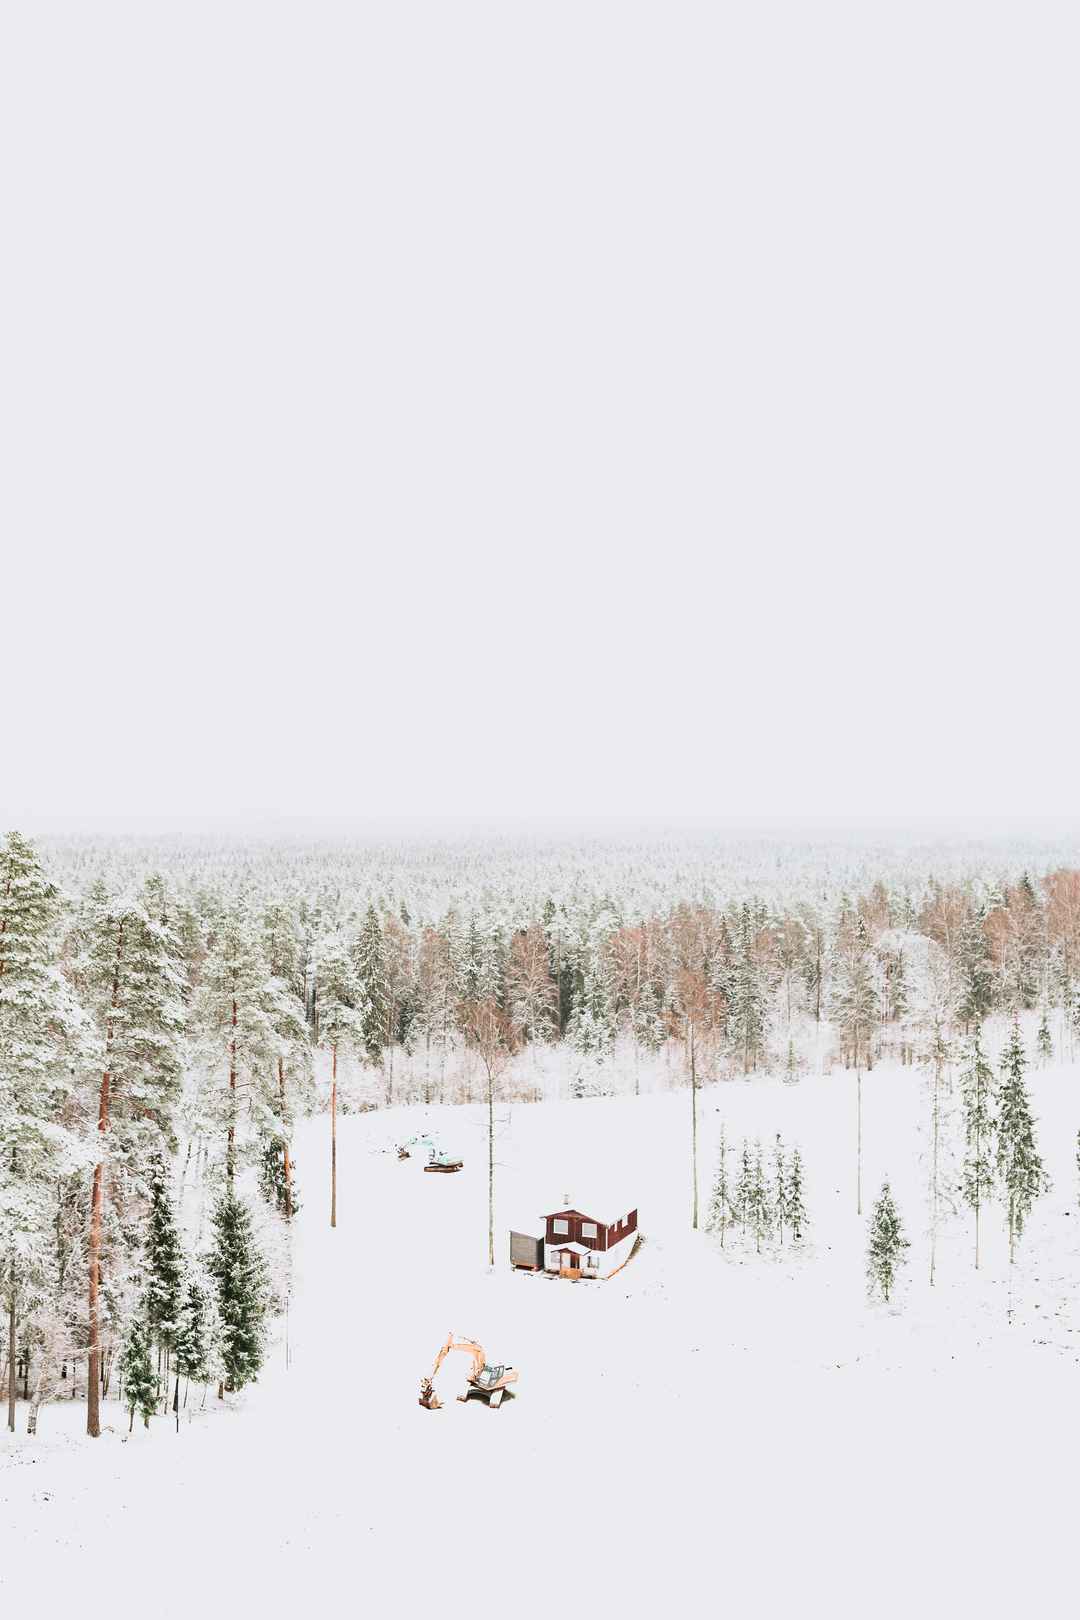 梦幻冬天丛林冬天雪景手机壁纸图片